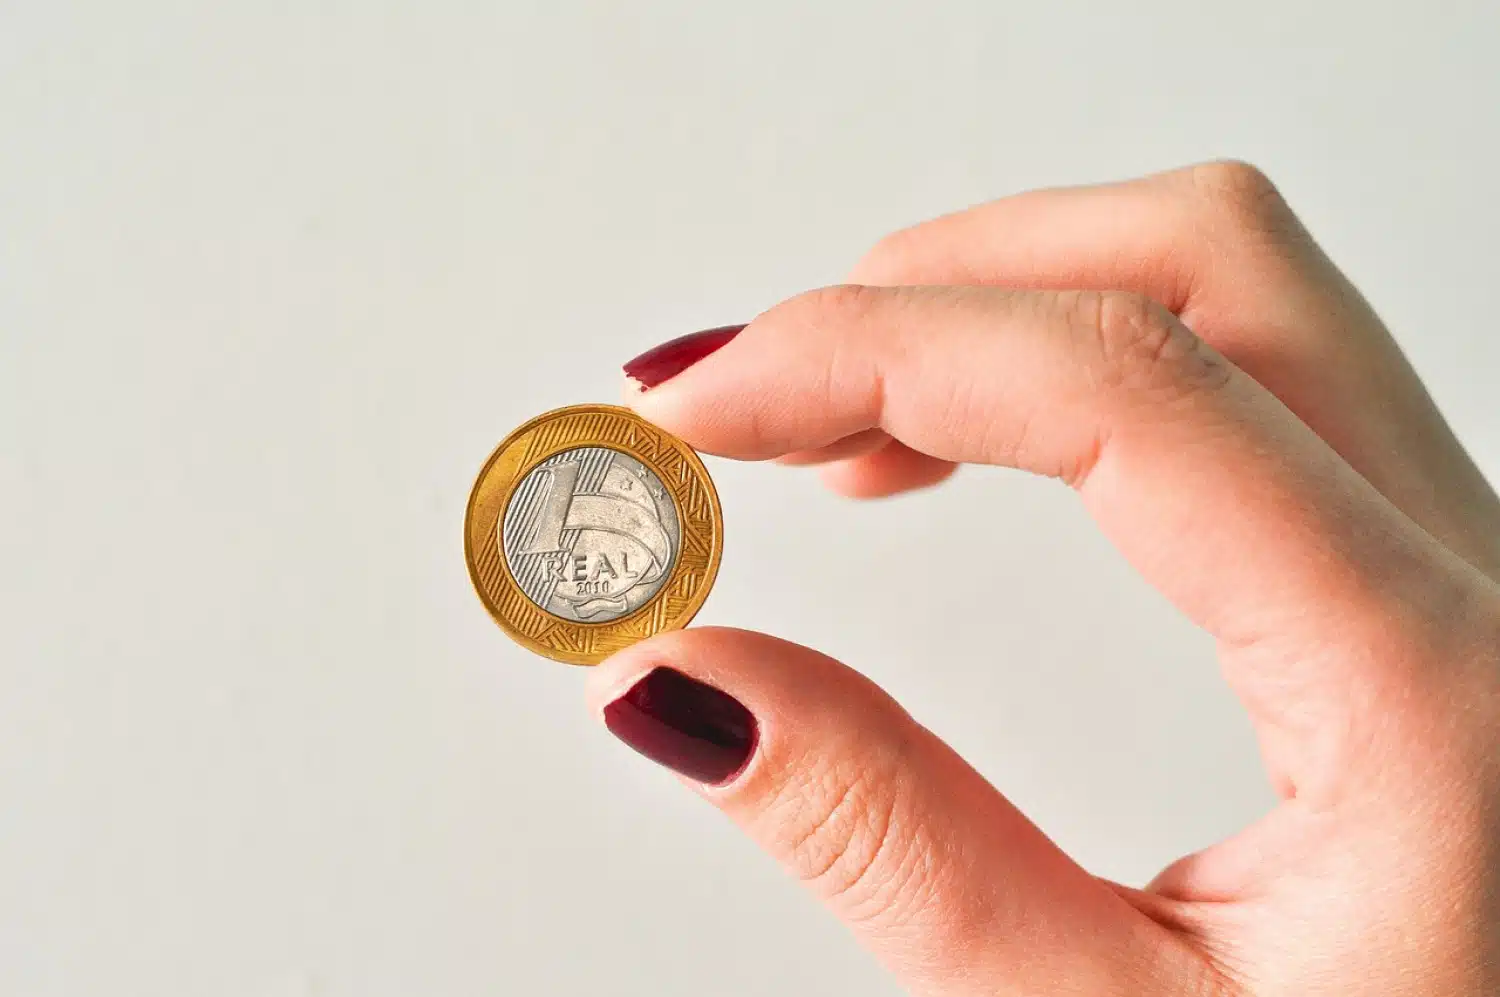  گنجینه های پنهان: نحوه شناسایی و فروش 1 سکه واقعی کمیاب و ارزشمند